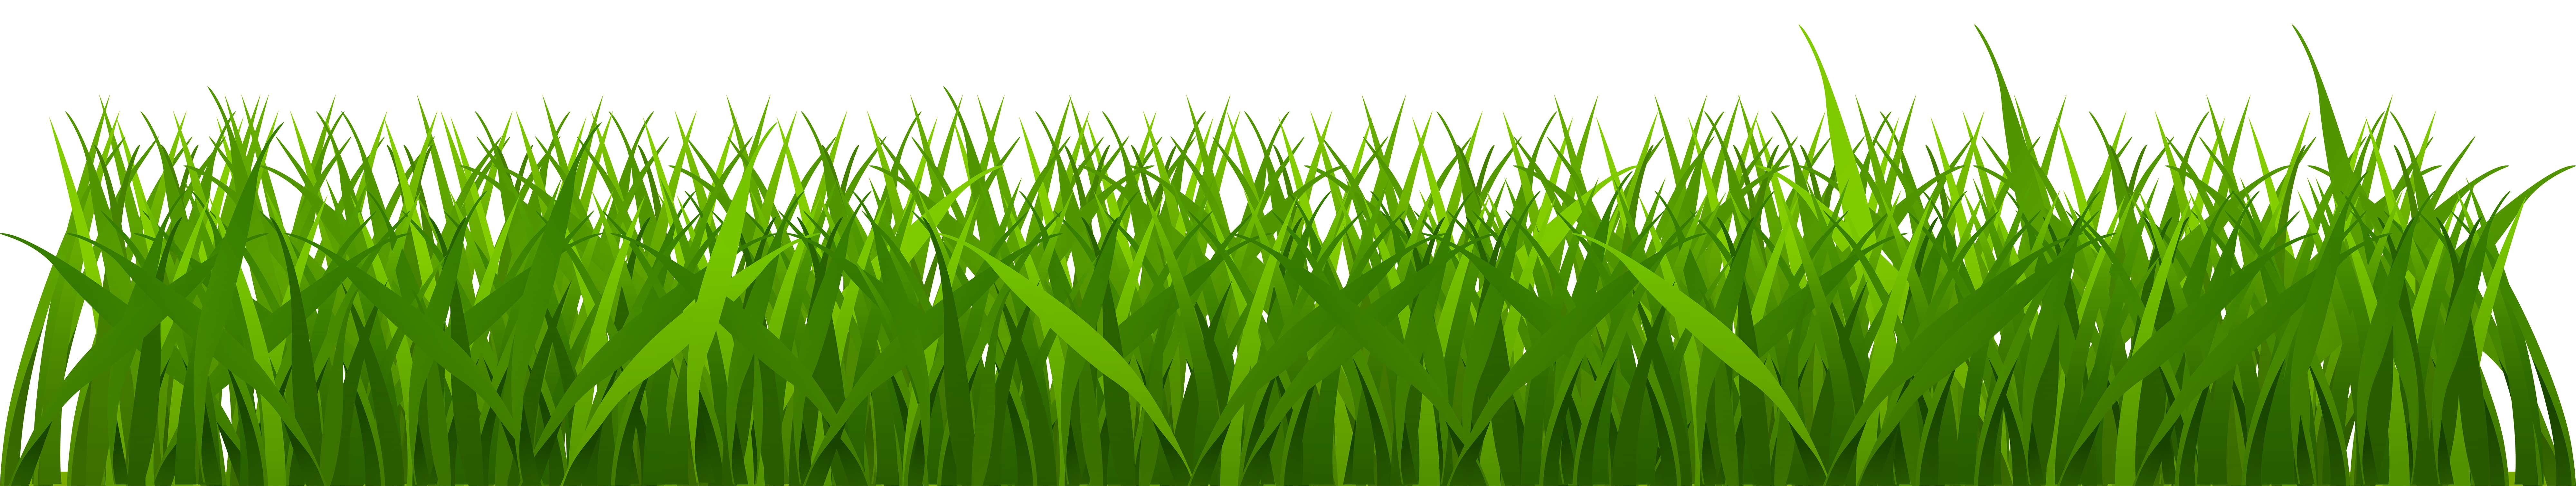 Daisies clipart long grass, Daisies long grass Transparent